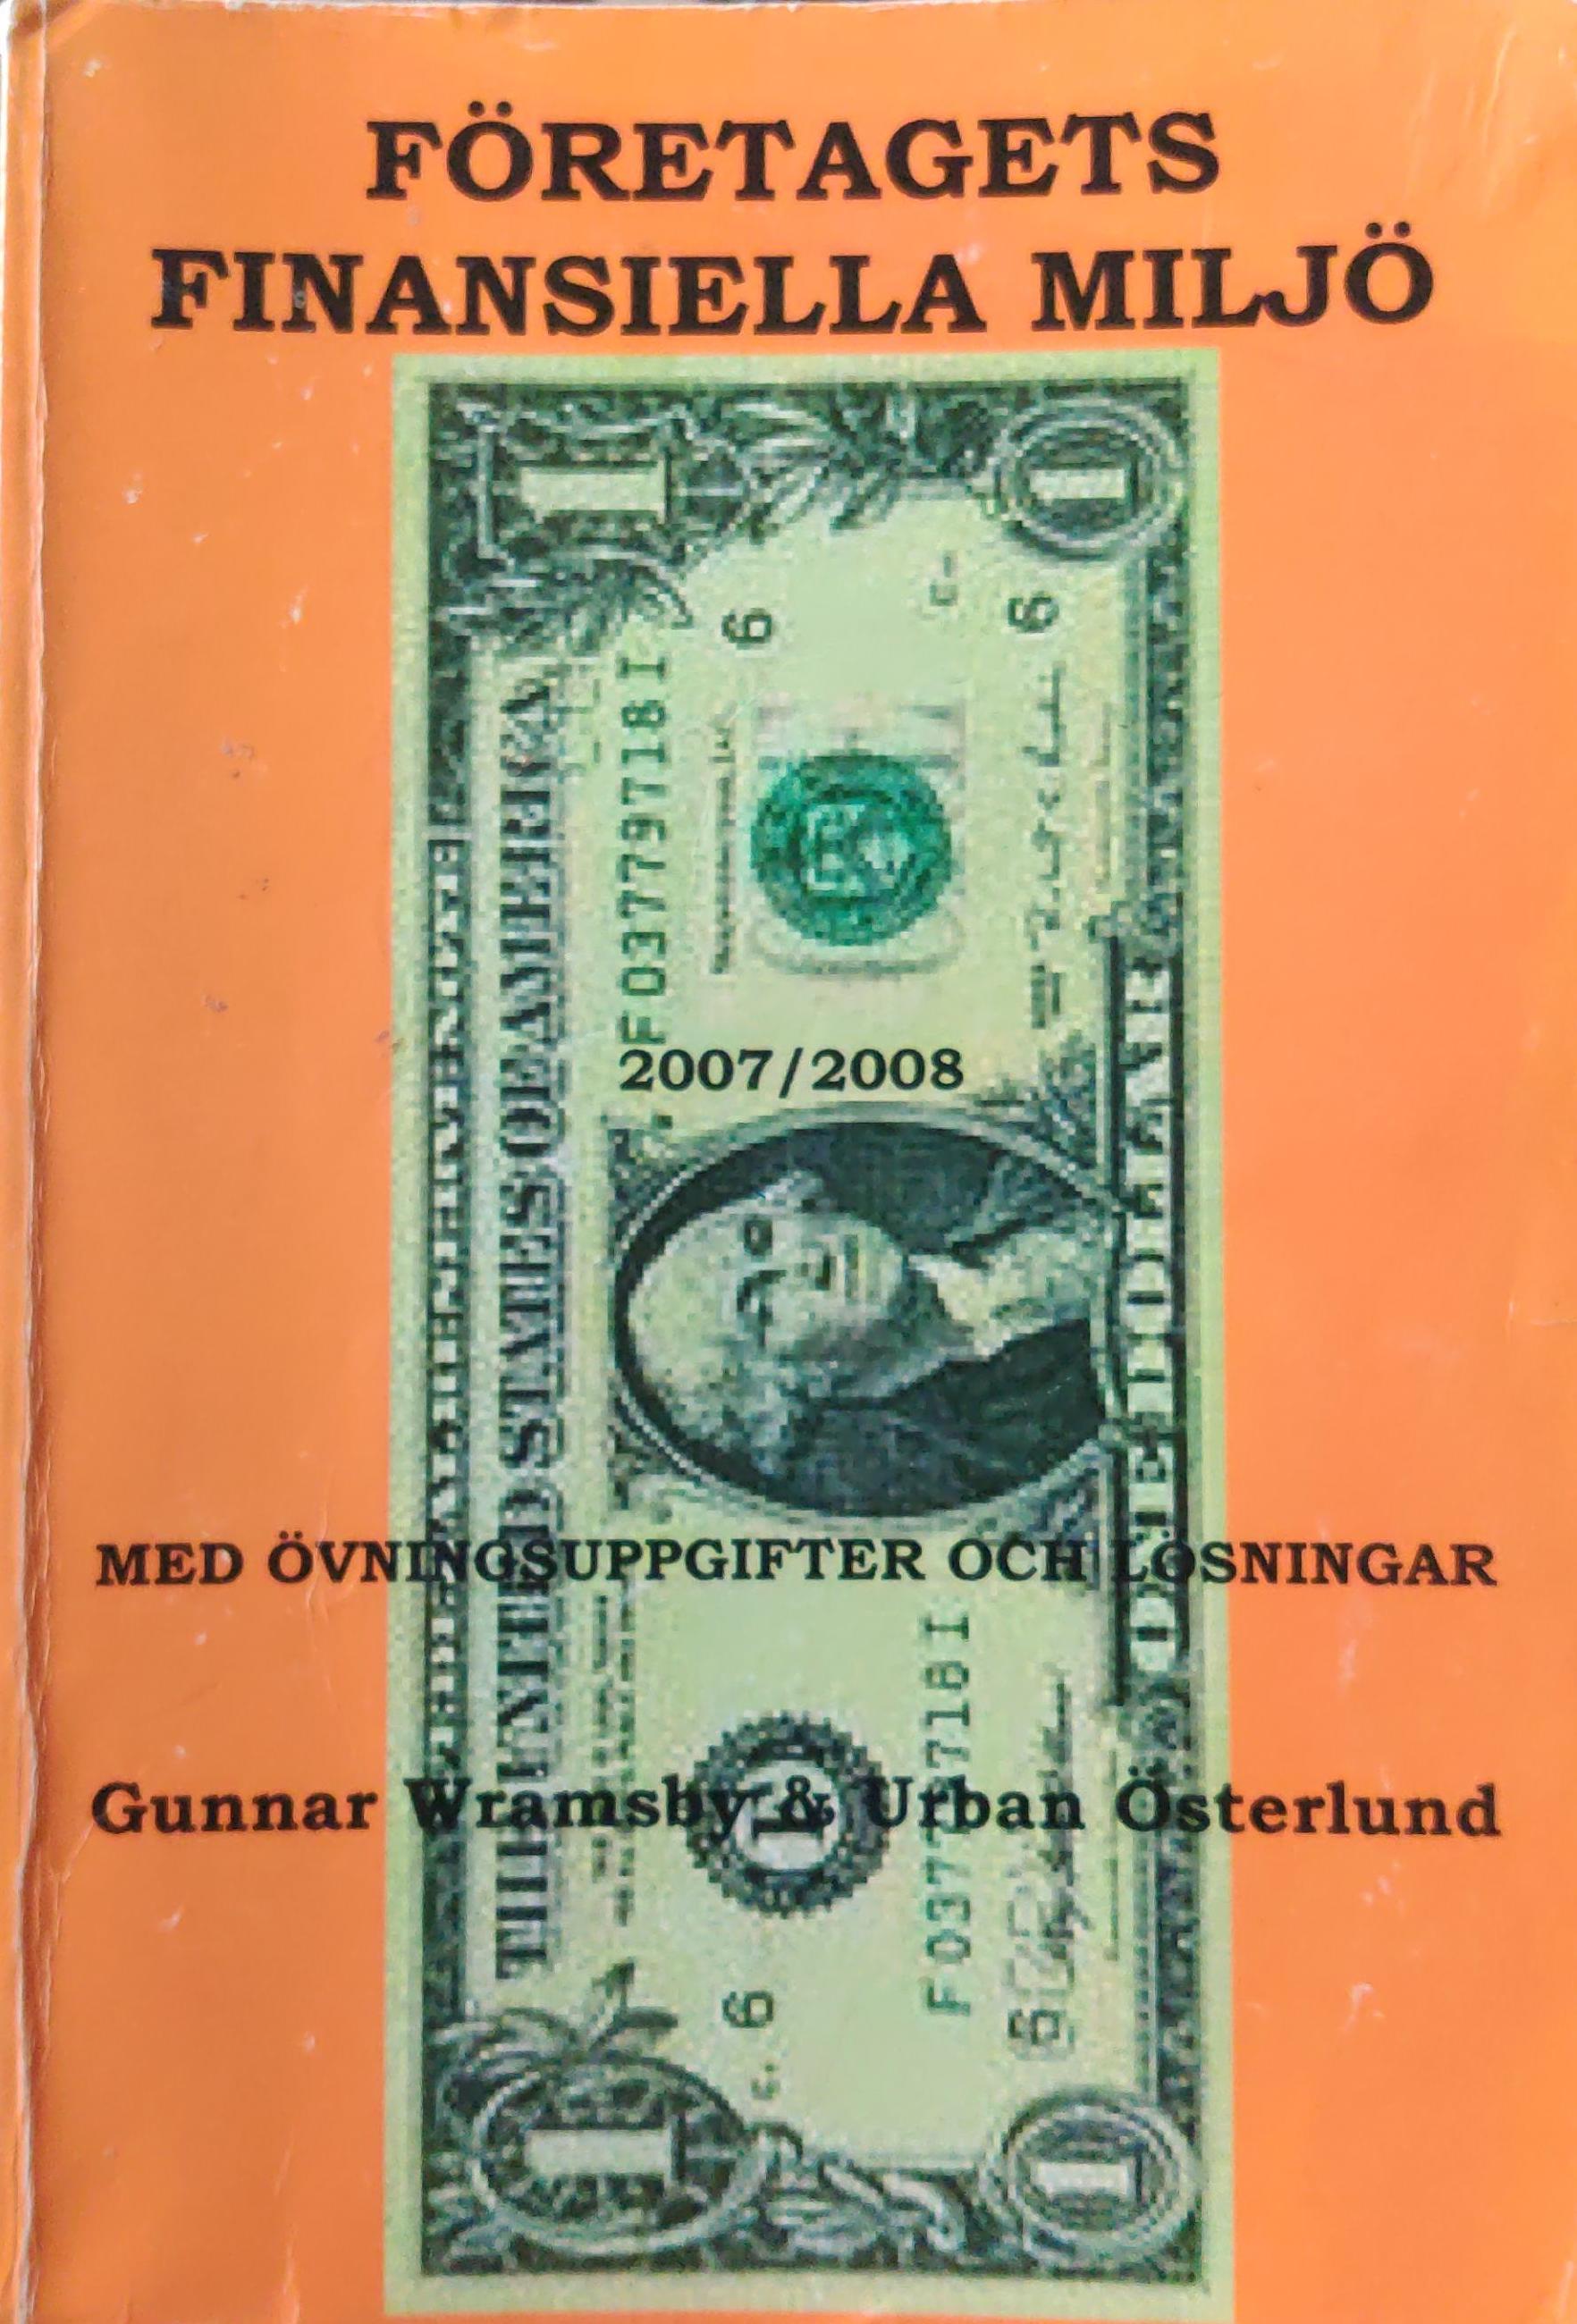 Företagets finansiella miljö 2007/2008; Gunnar Wramsby, Urban Österlund; 2007